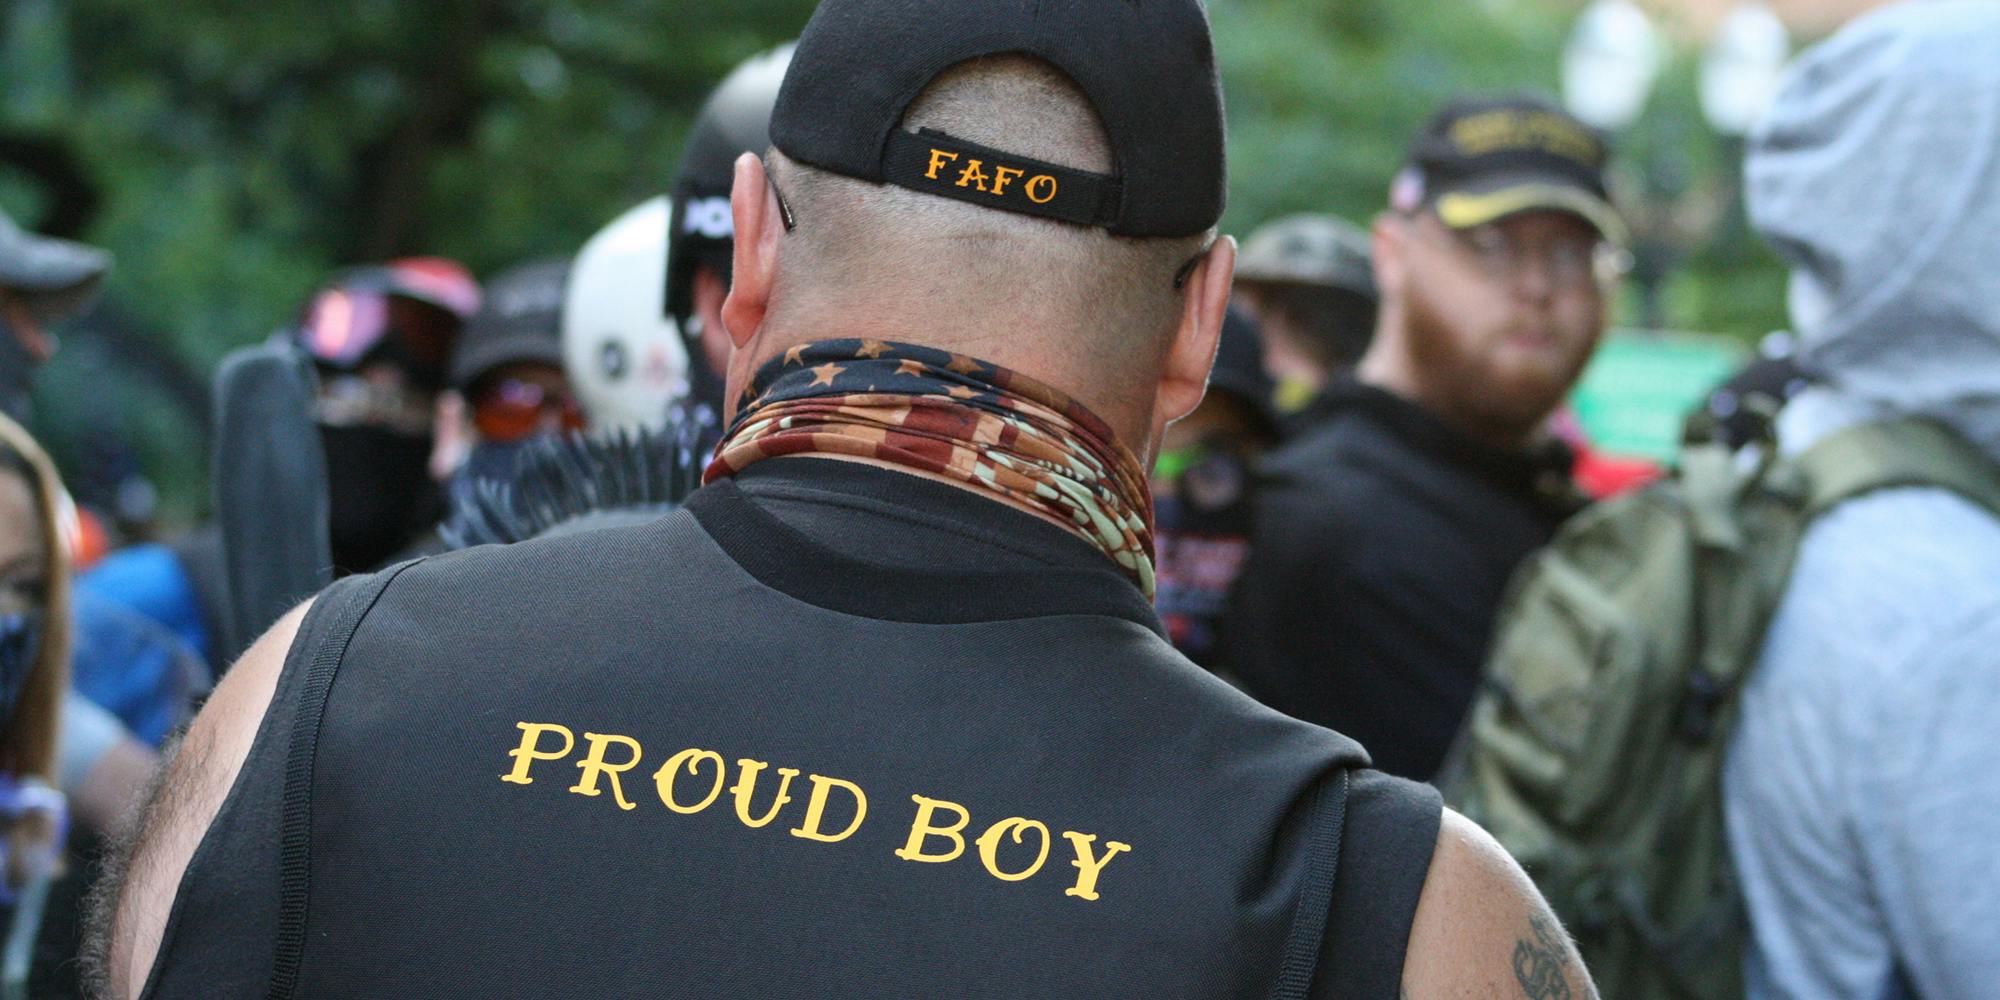 man wearing "proud boy" gear